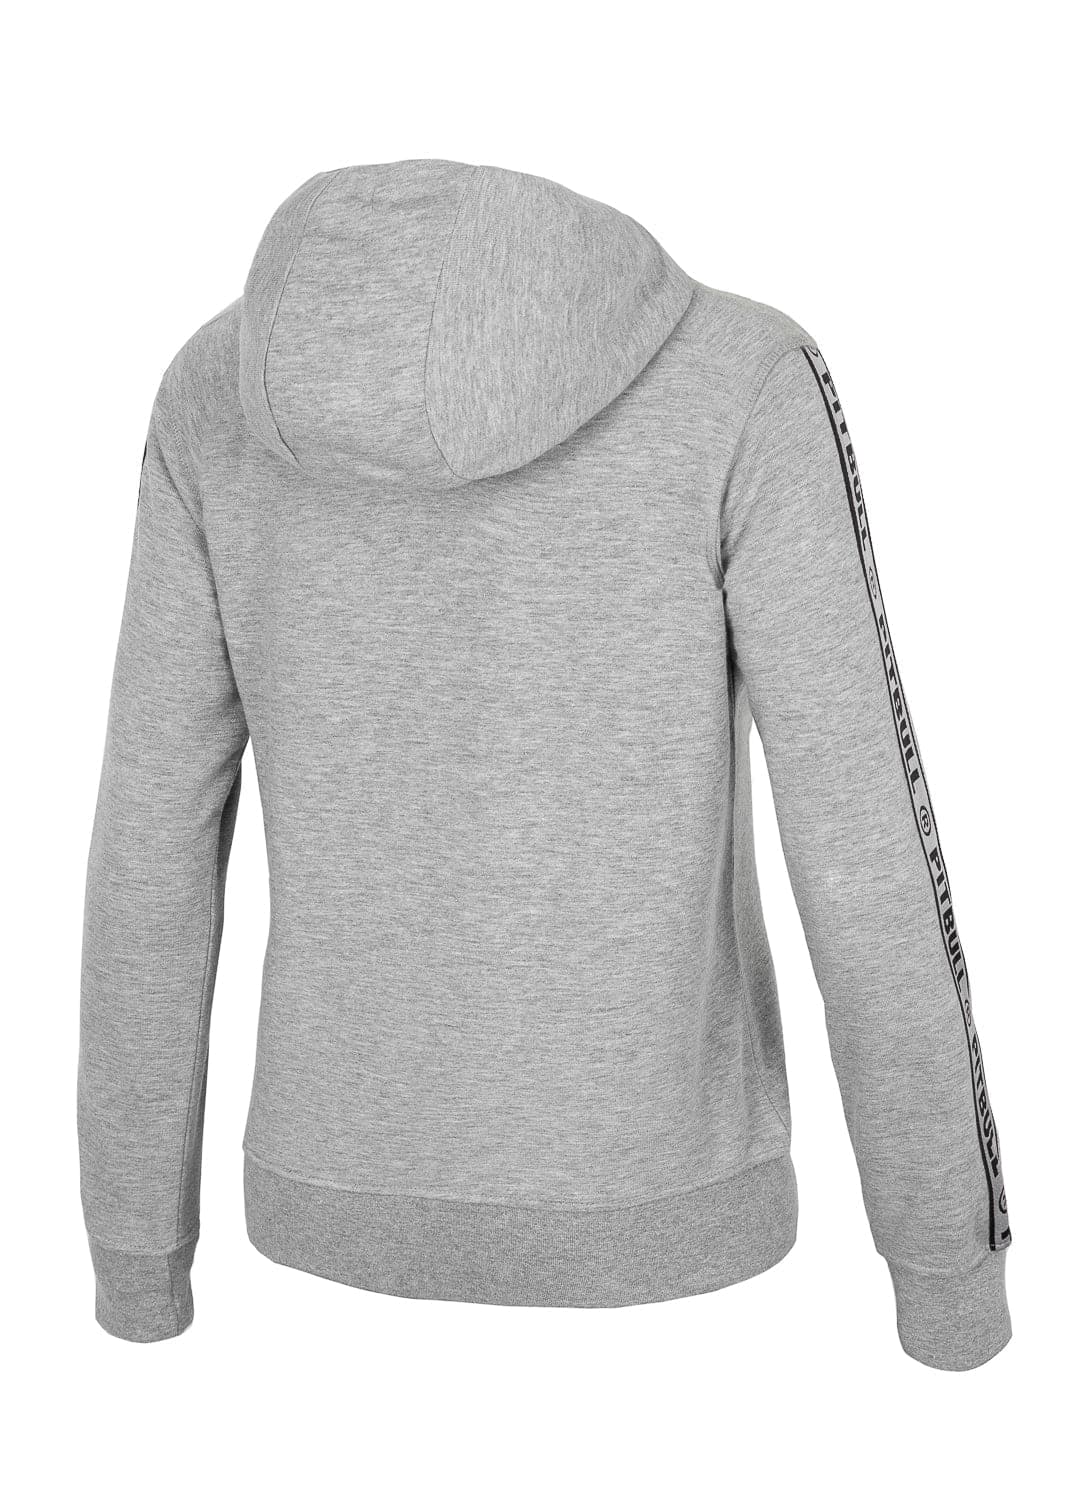 GWEN zip hoodie Grey.